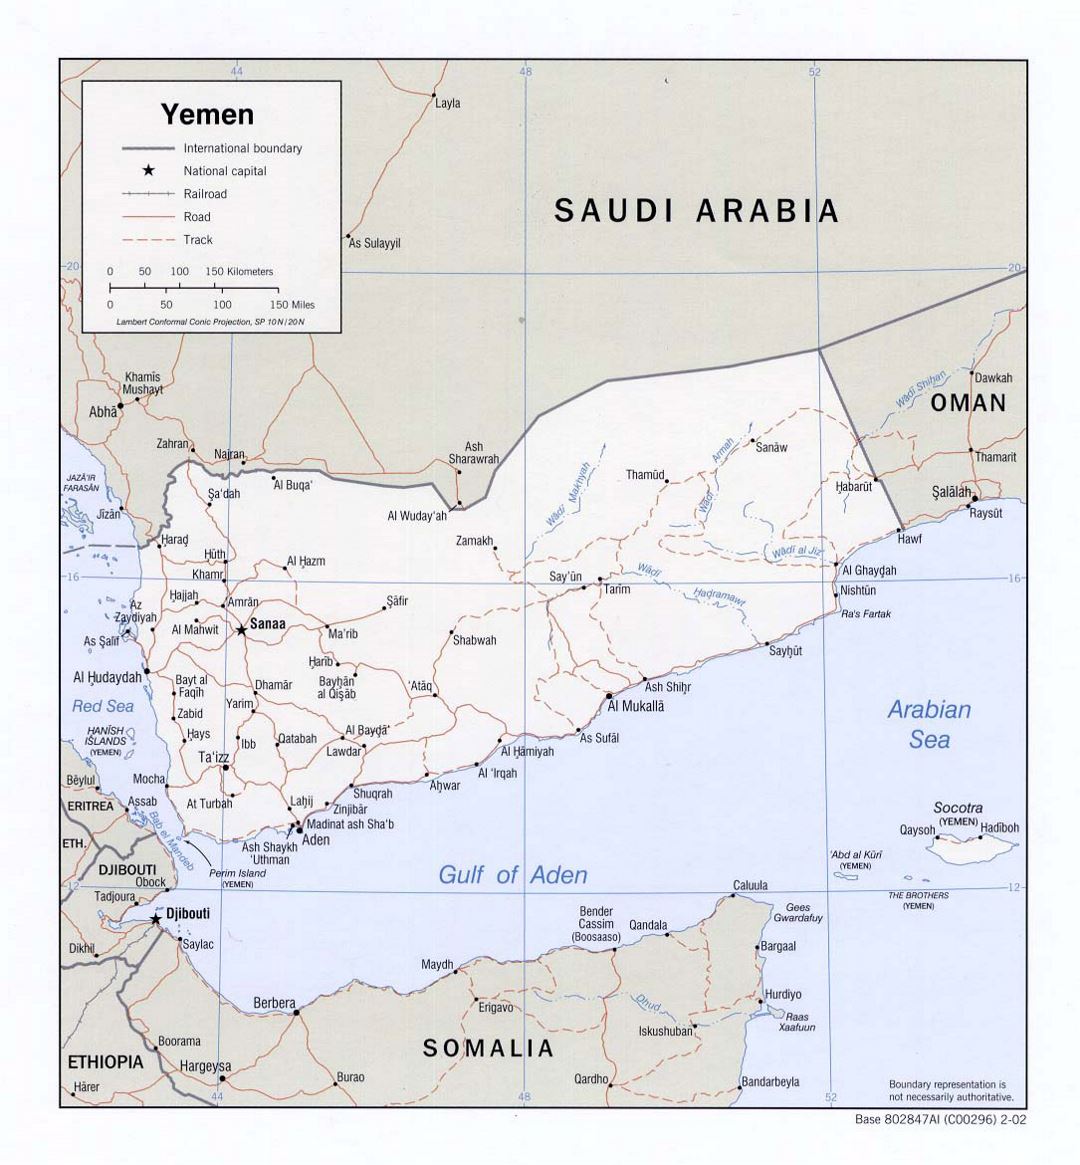 Detallado mapa político de Yemen con carreteras, ferrocarriles y principales ciudades - 2002